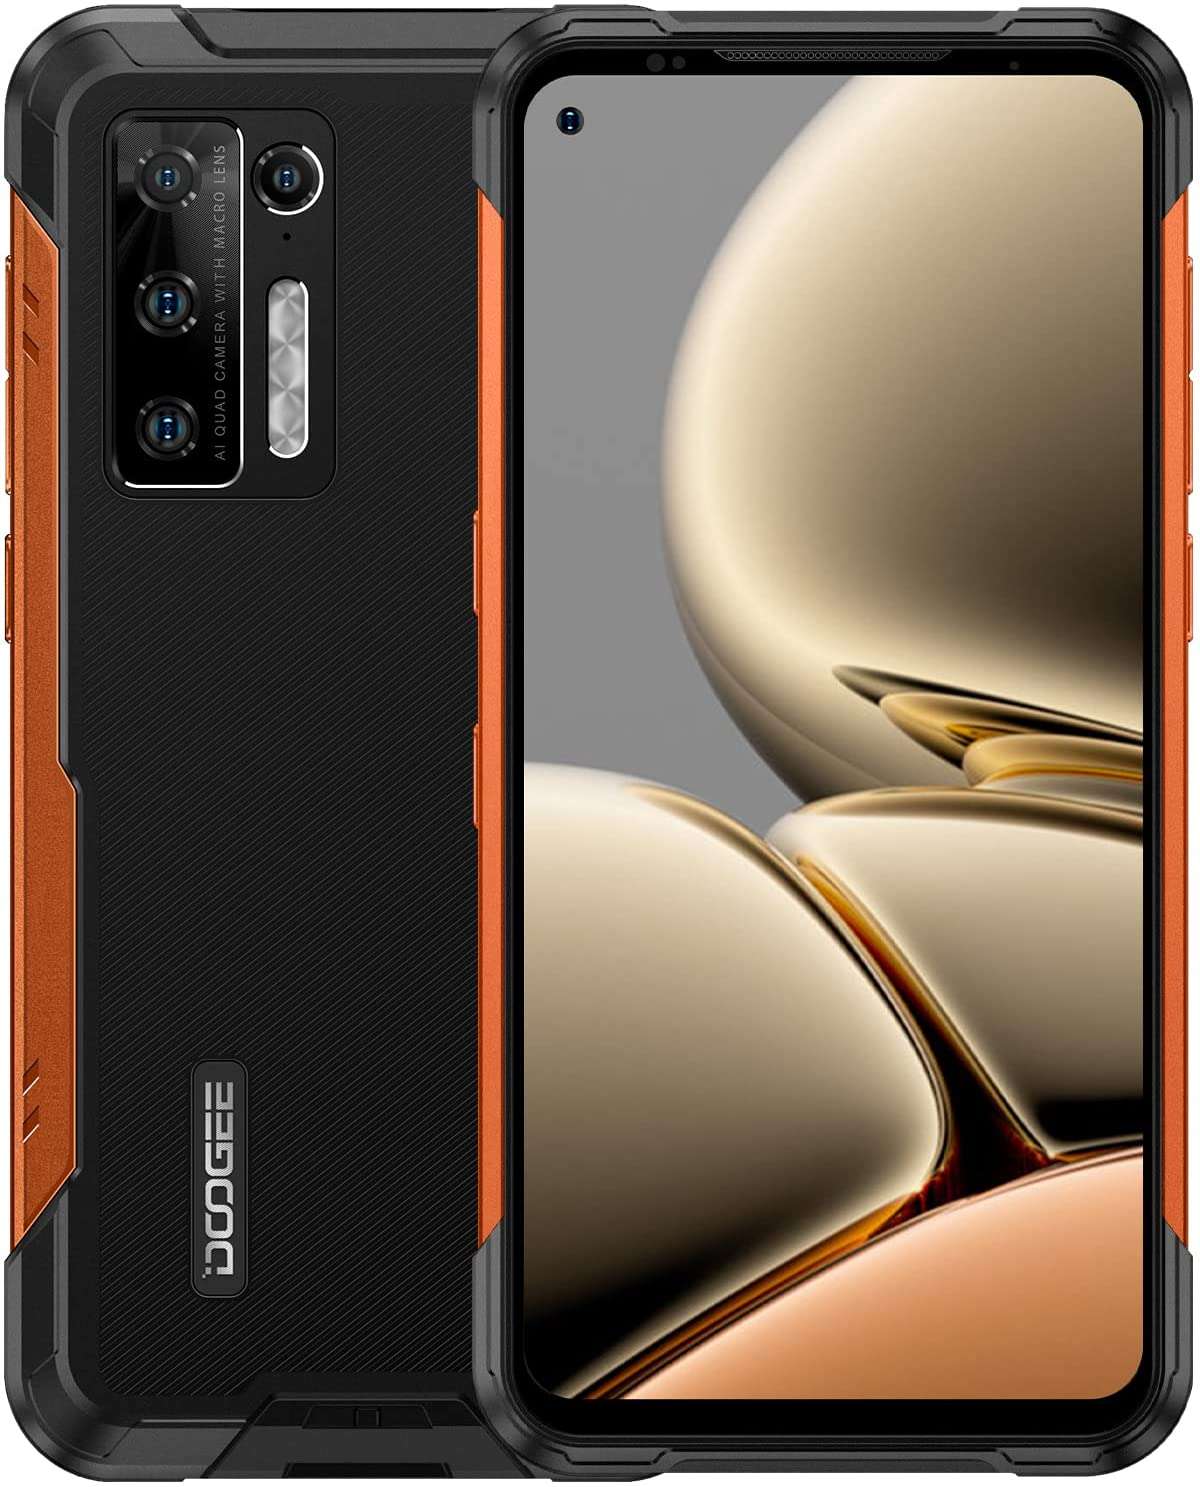 DOOGEE S97 rugged smartphone